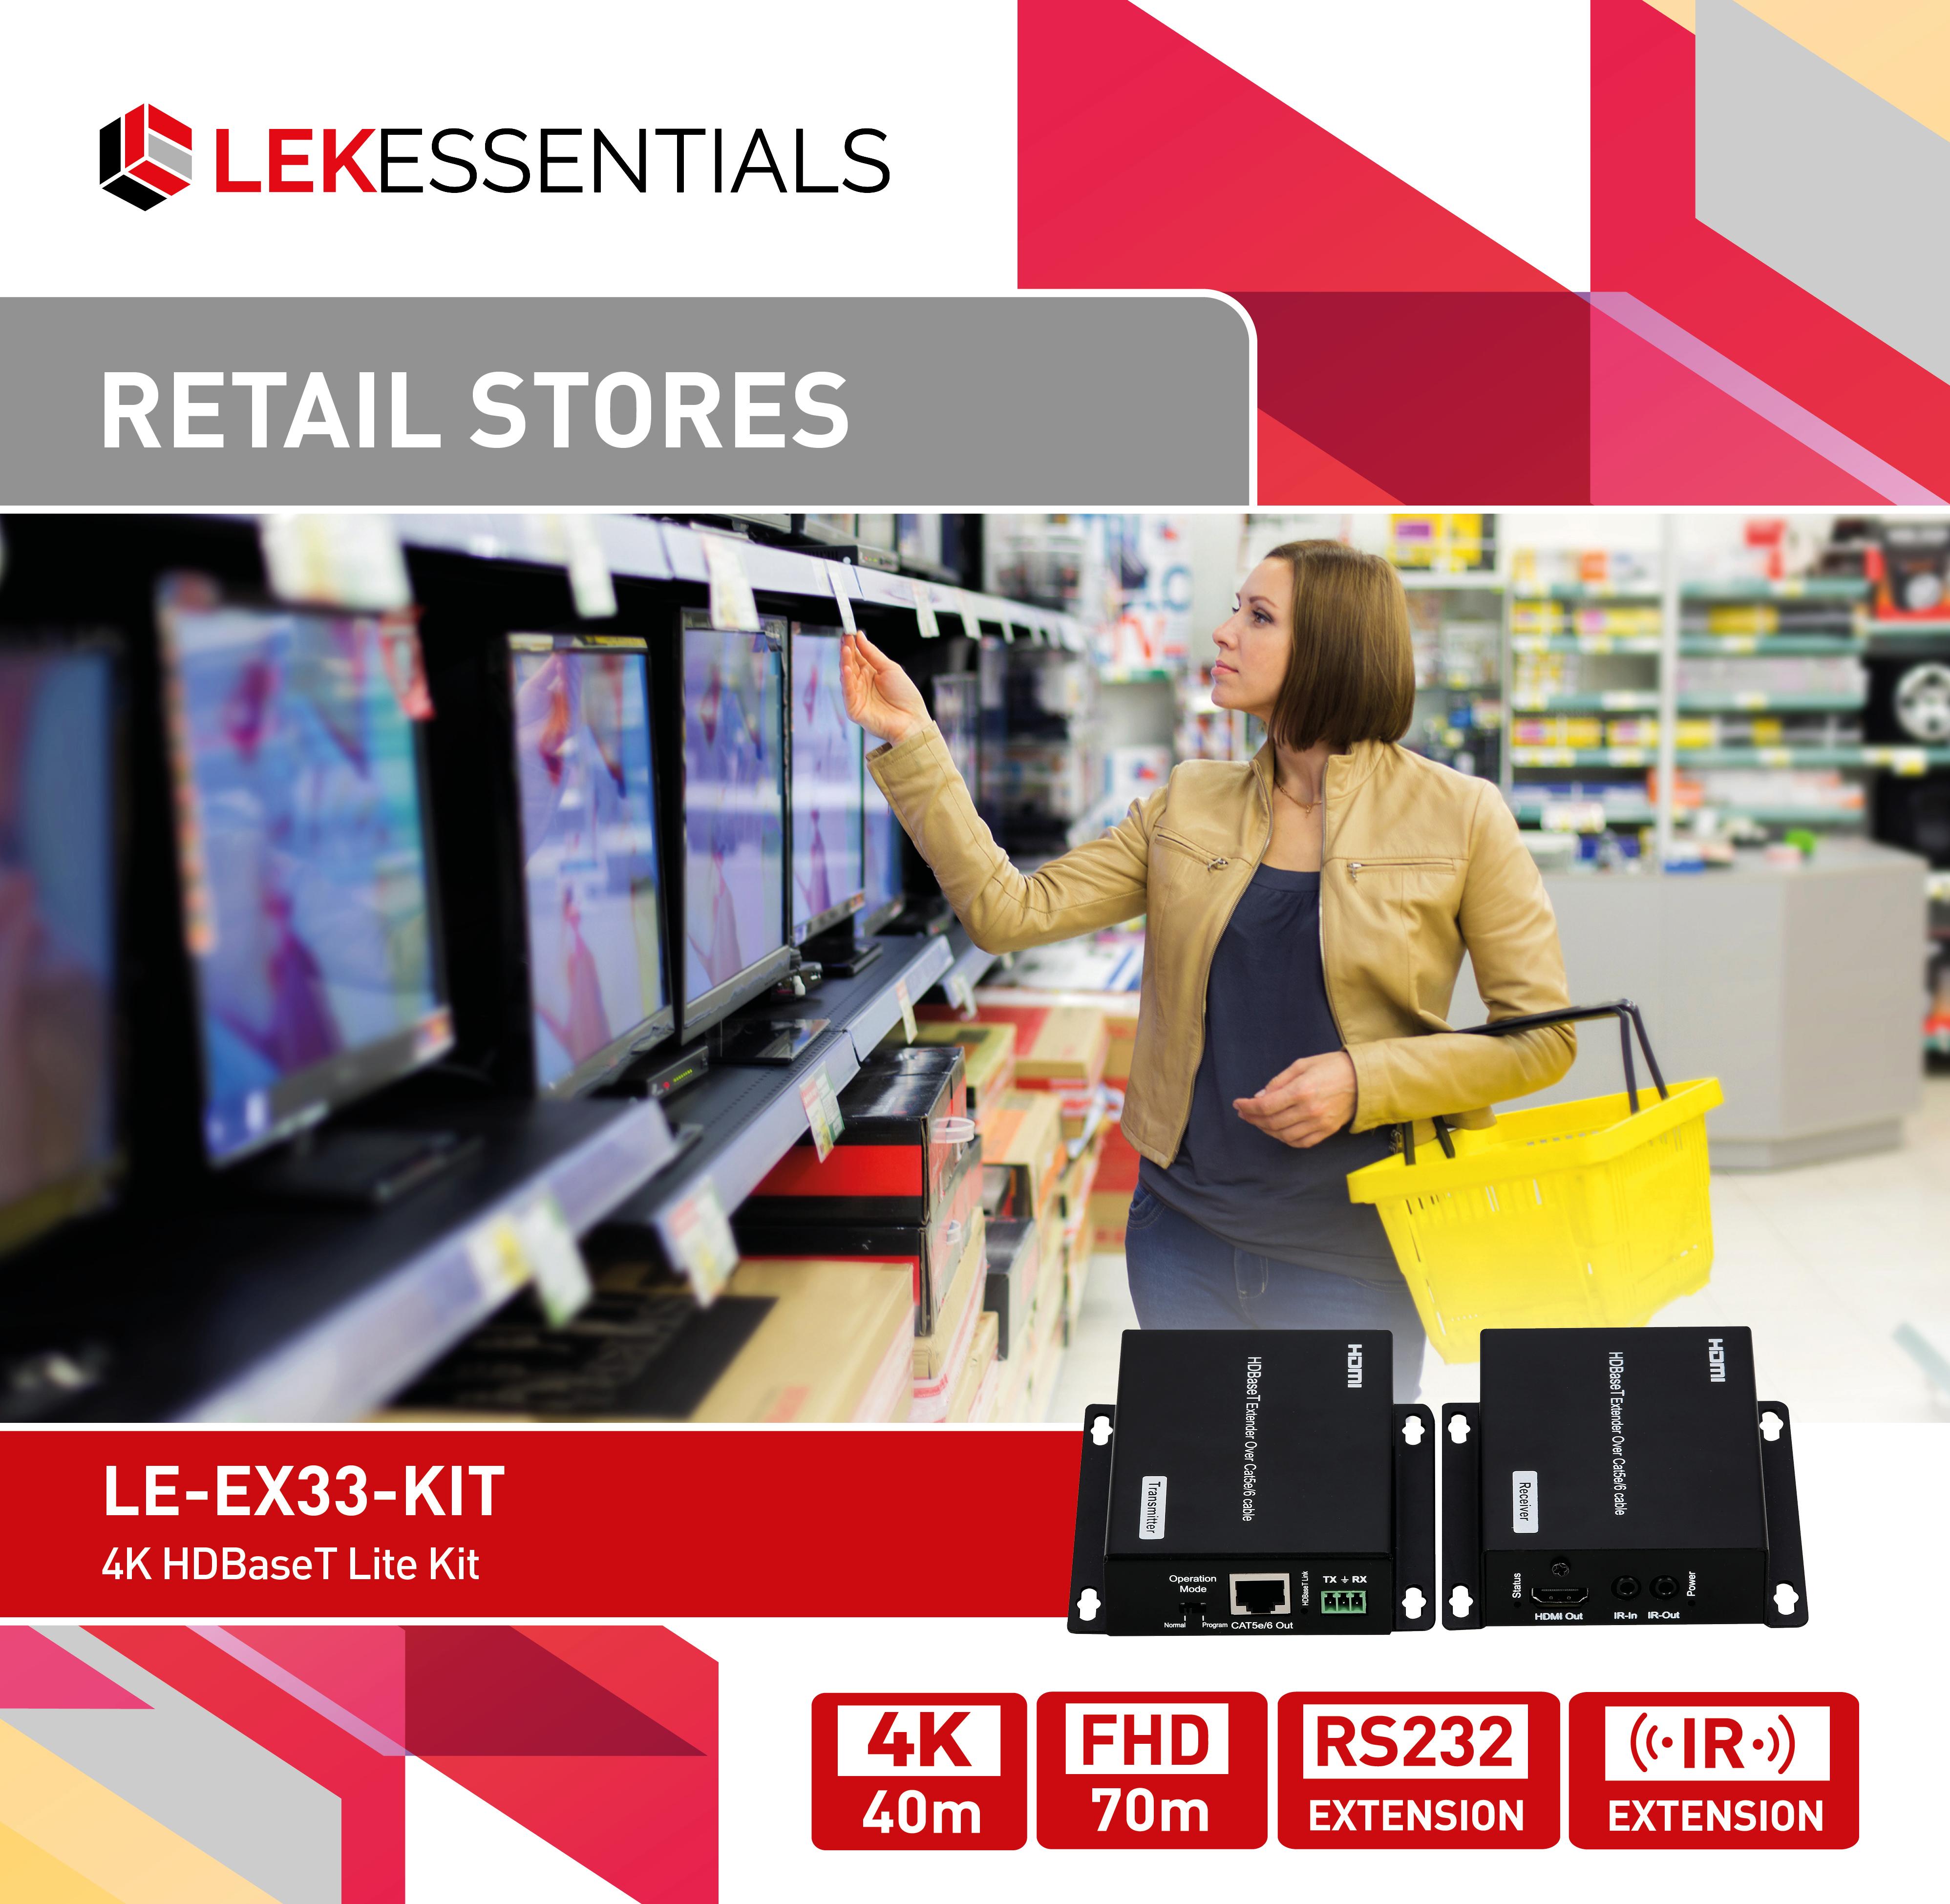 LE-EX33-KIT Retail stores